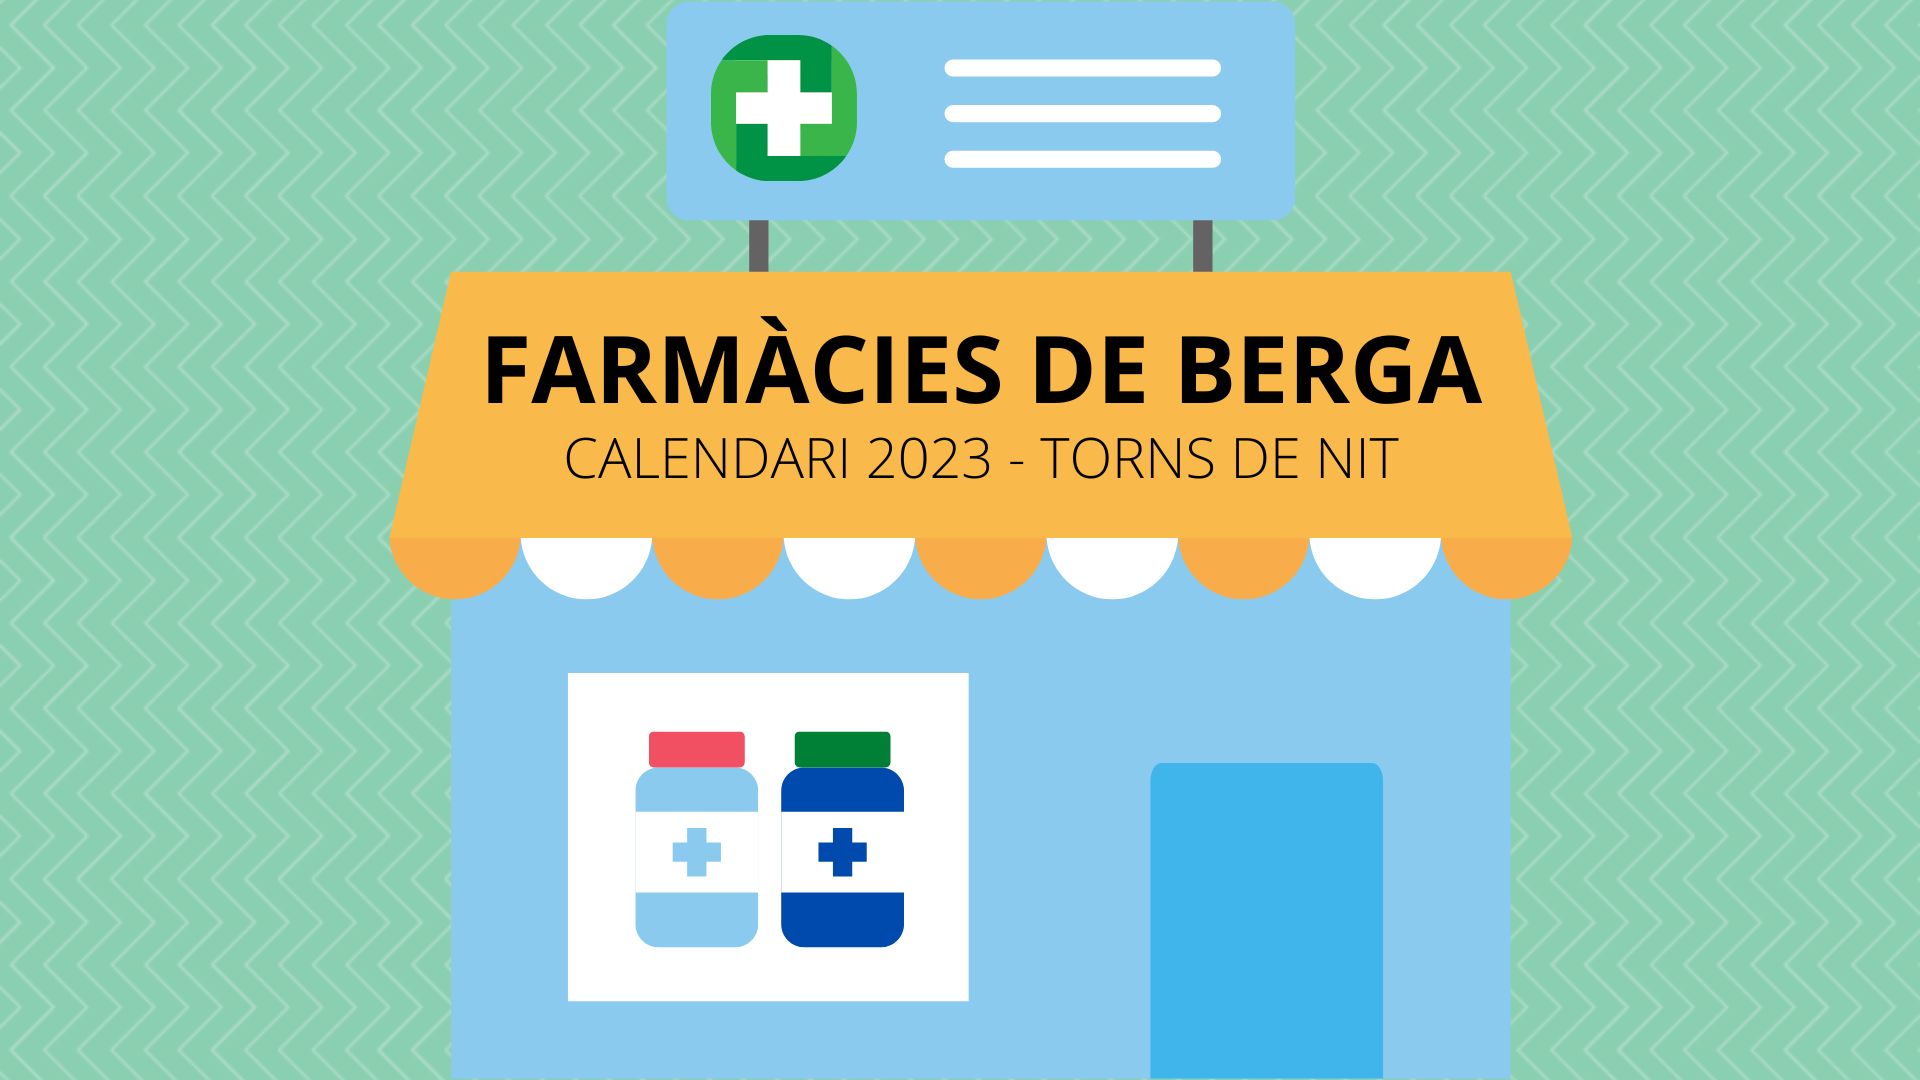 Calendari de farmàcies de guàrdia de Berga 2023